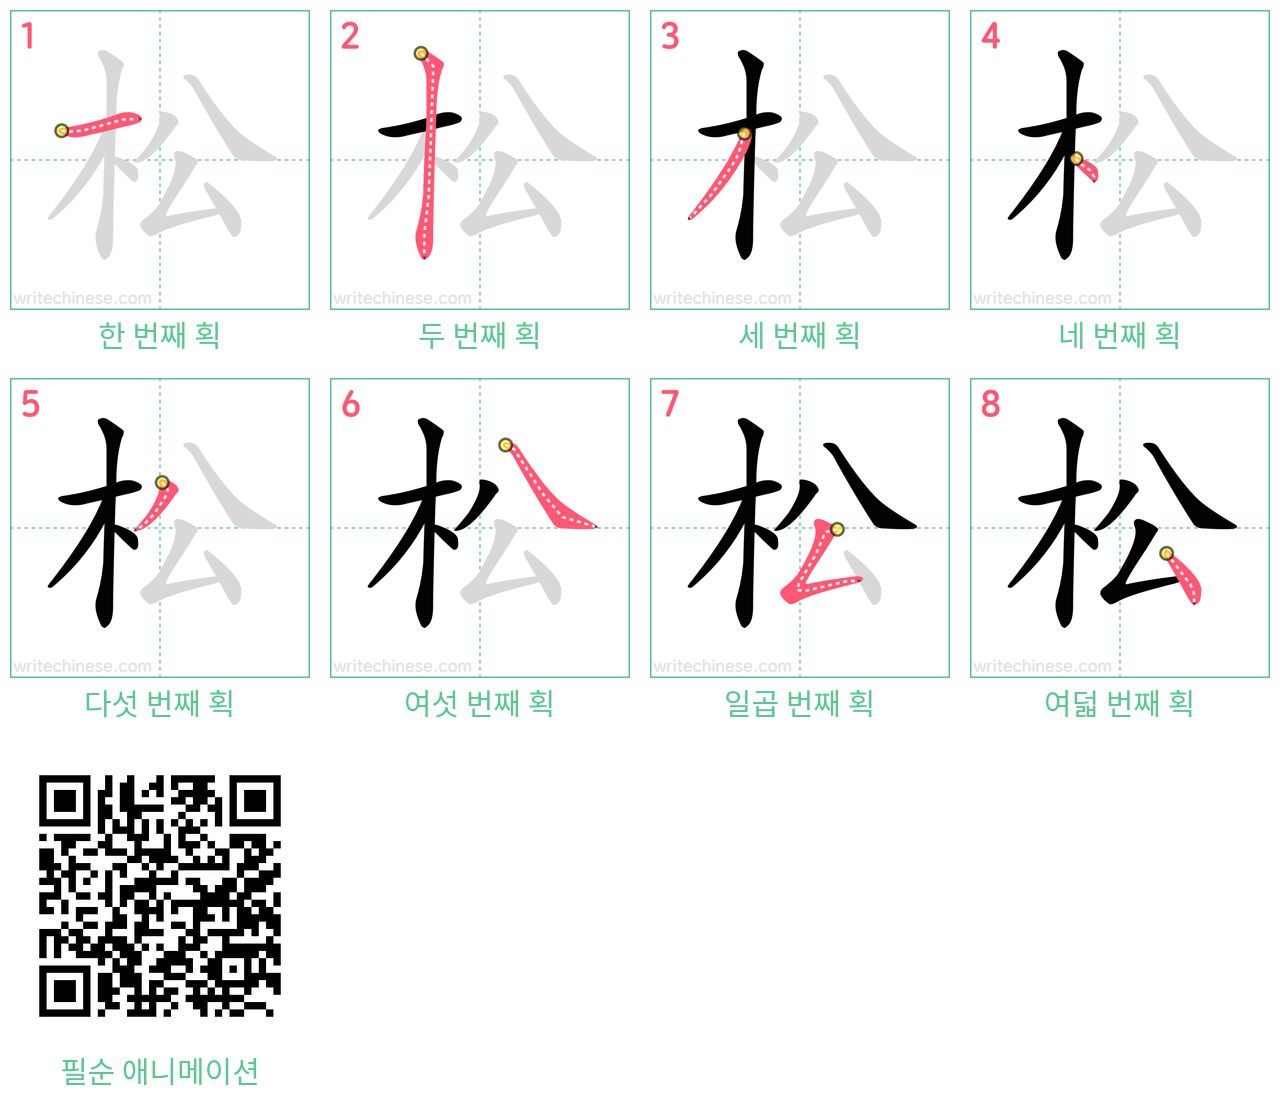 松 step-by-step stroke order diagrams